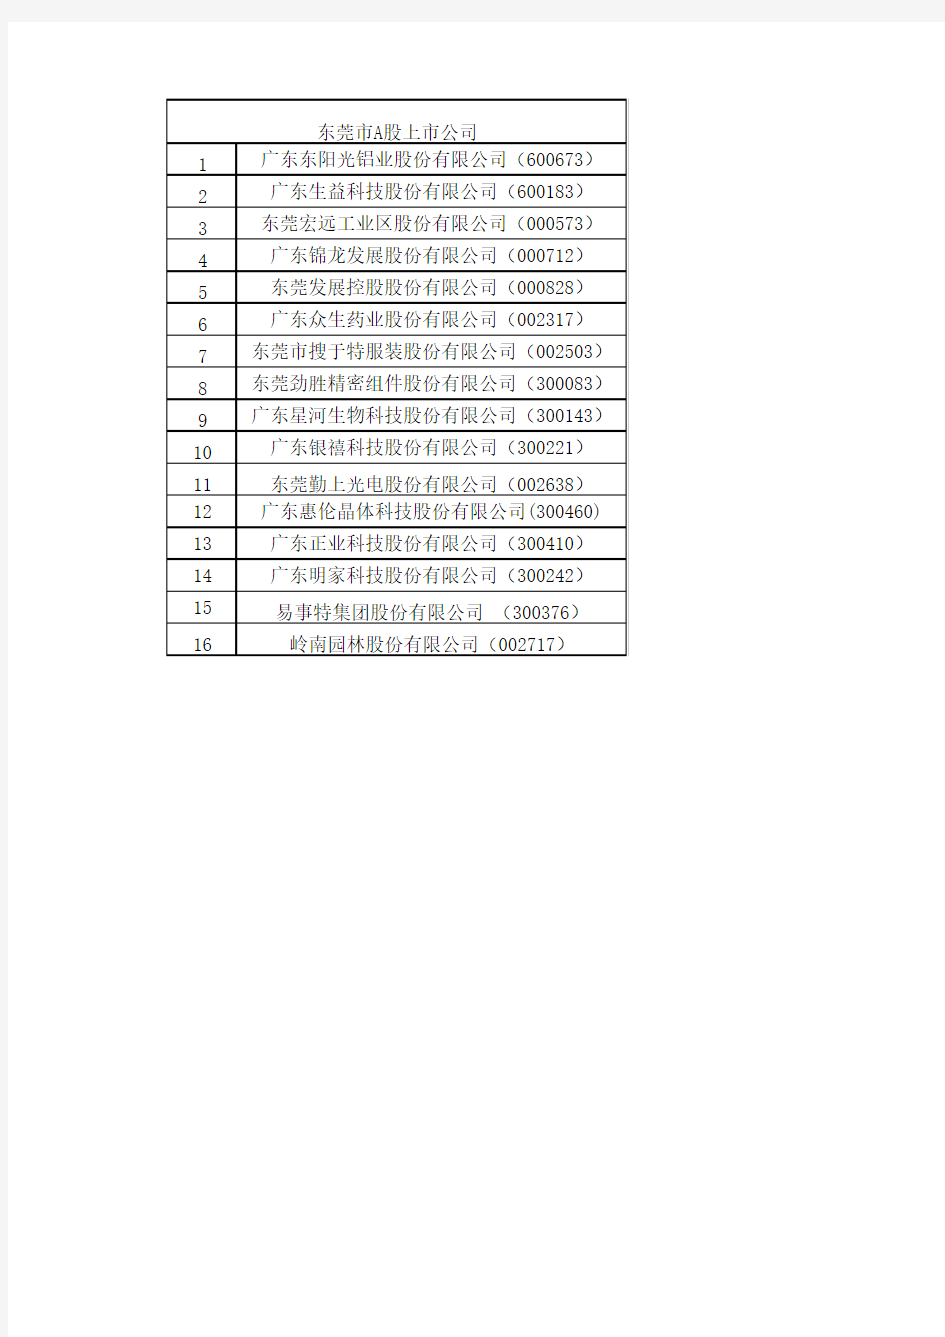 东莞市A股上市公司名录(截止至2015年12月30日)